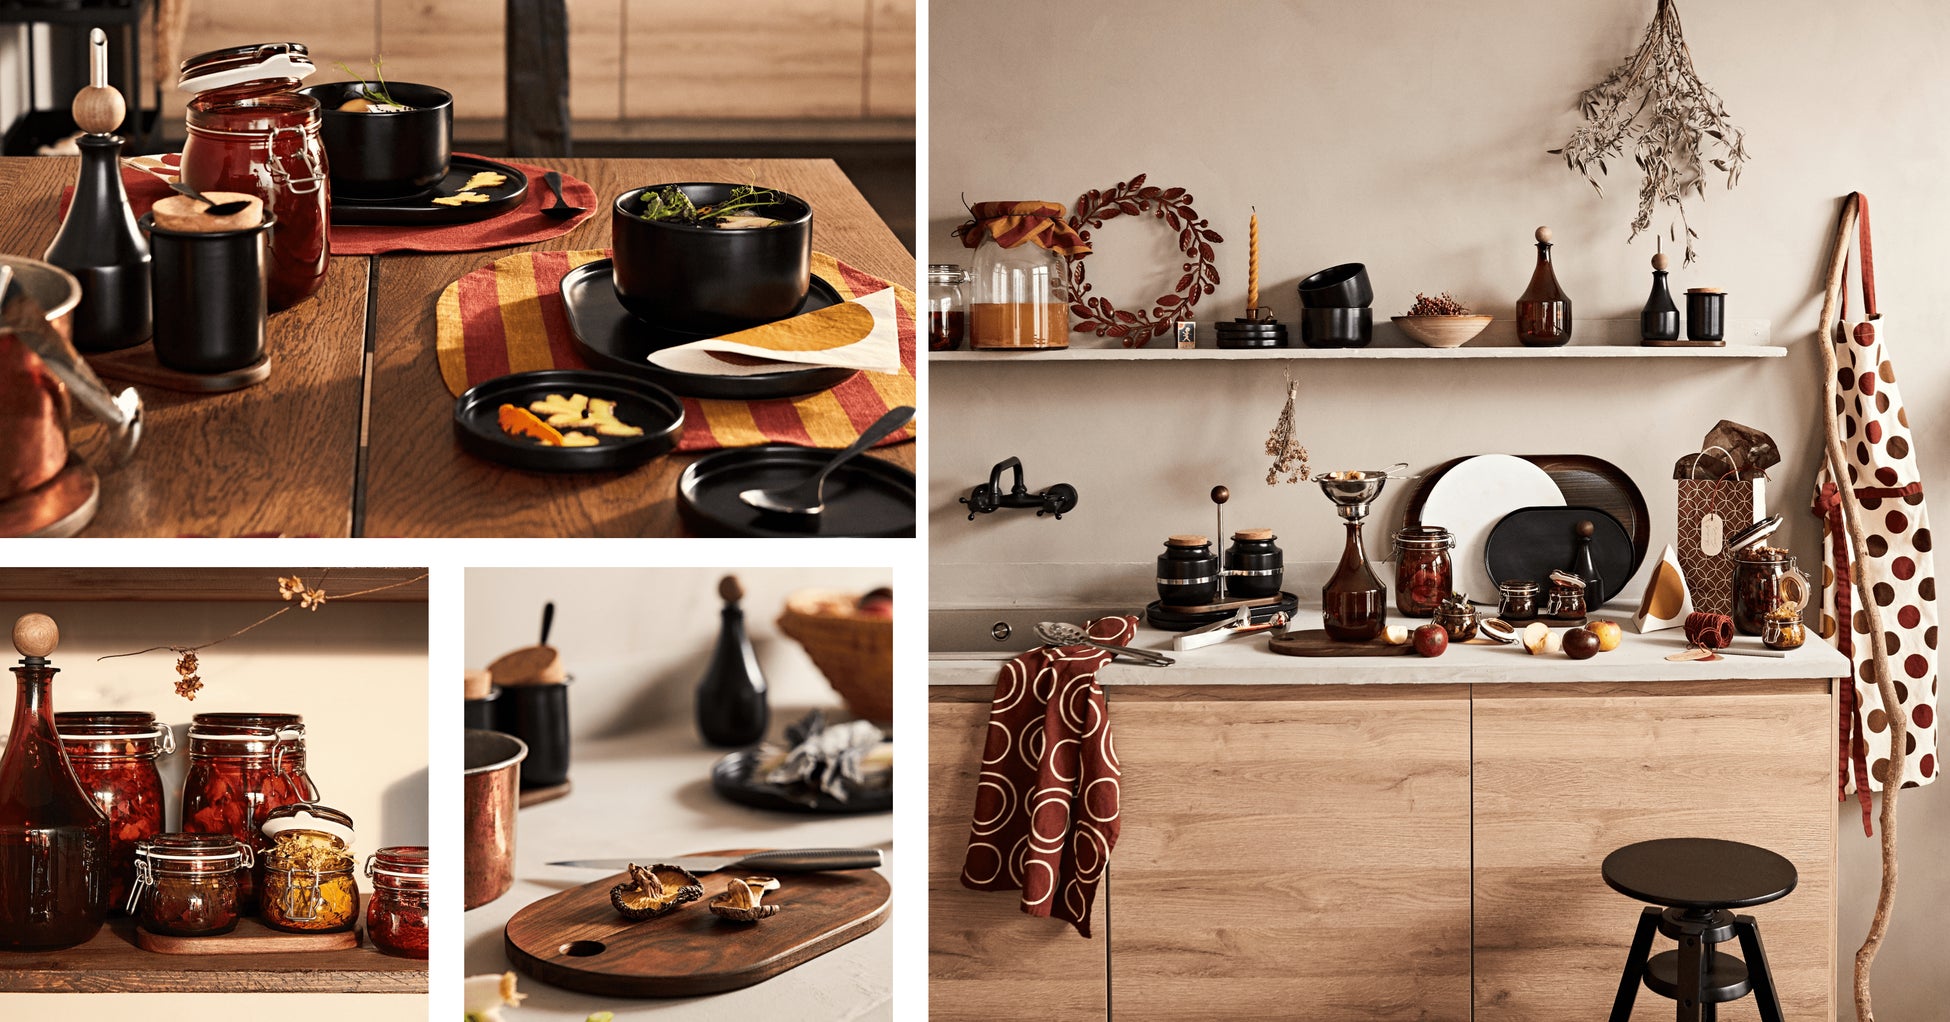 イケア、秋を感じるキッチン用品や食器のKRÖSAMOS/クローサモス 限定コレクションを9月1日より発売のサブ画像1